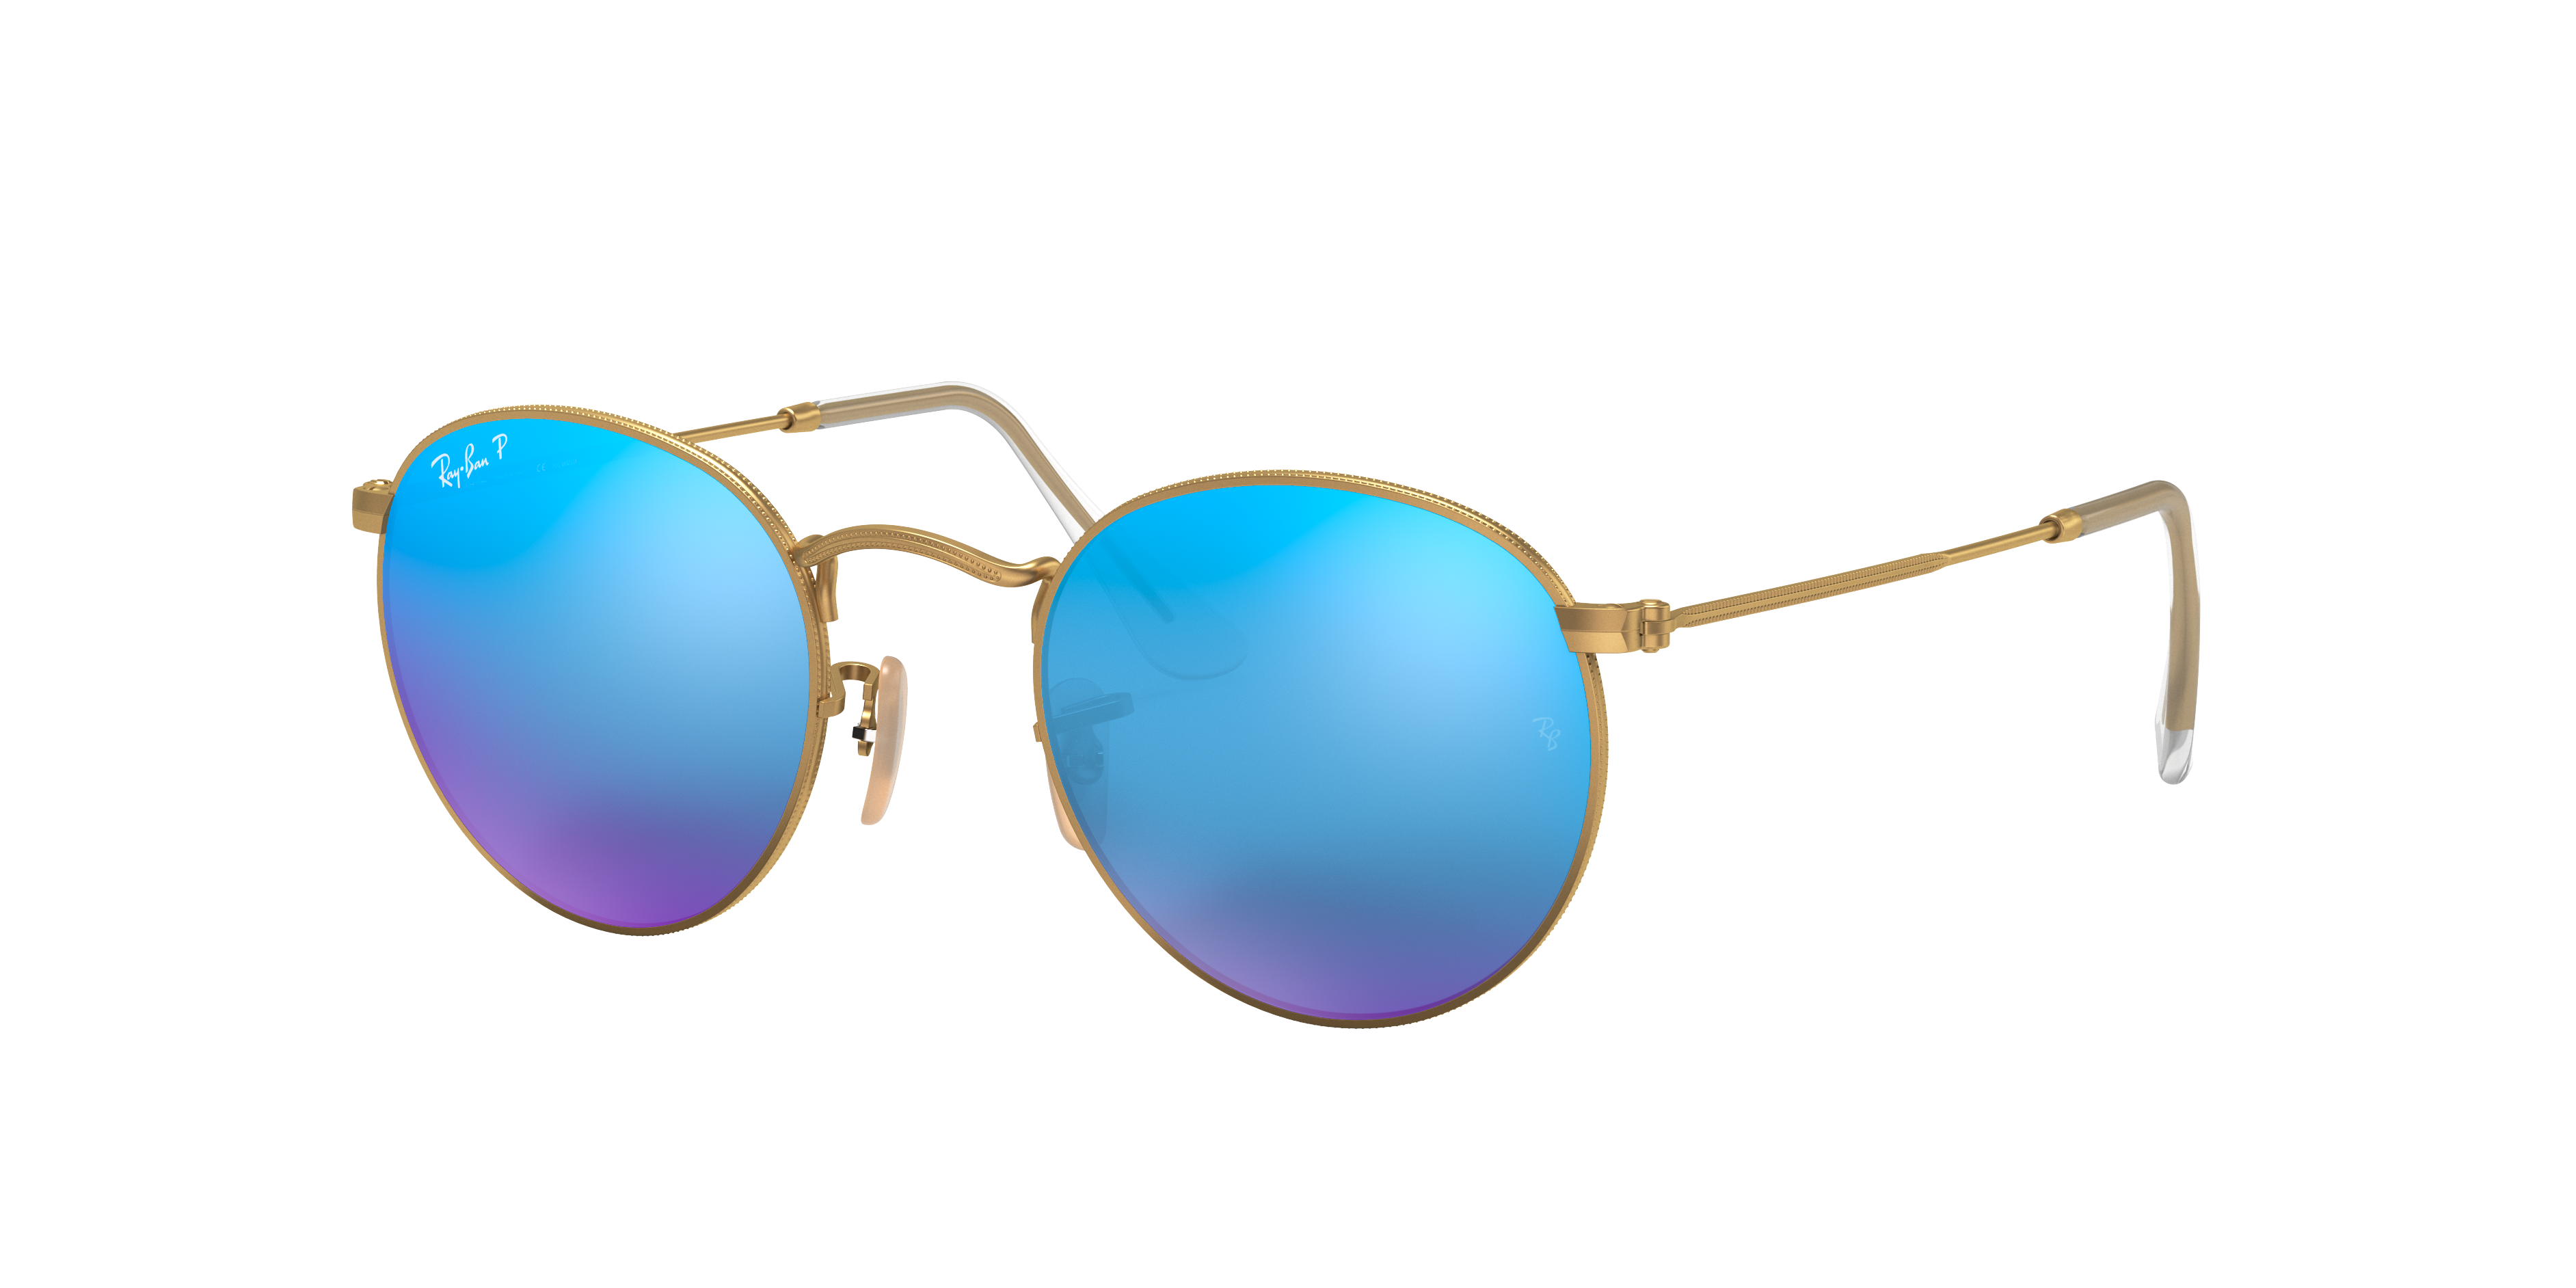 ray ban circle sunglasses blue